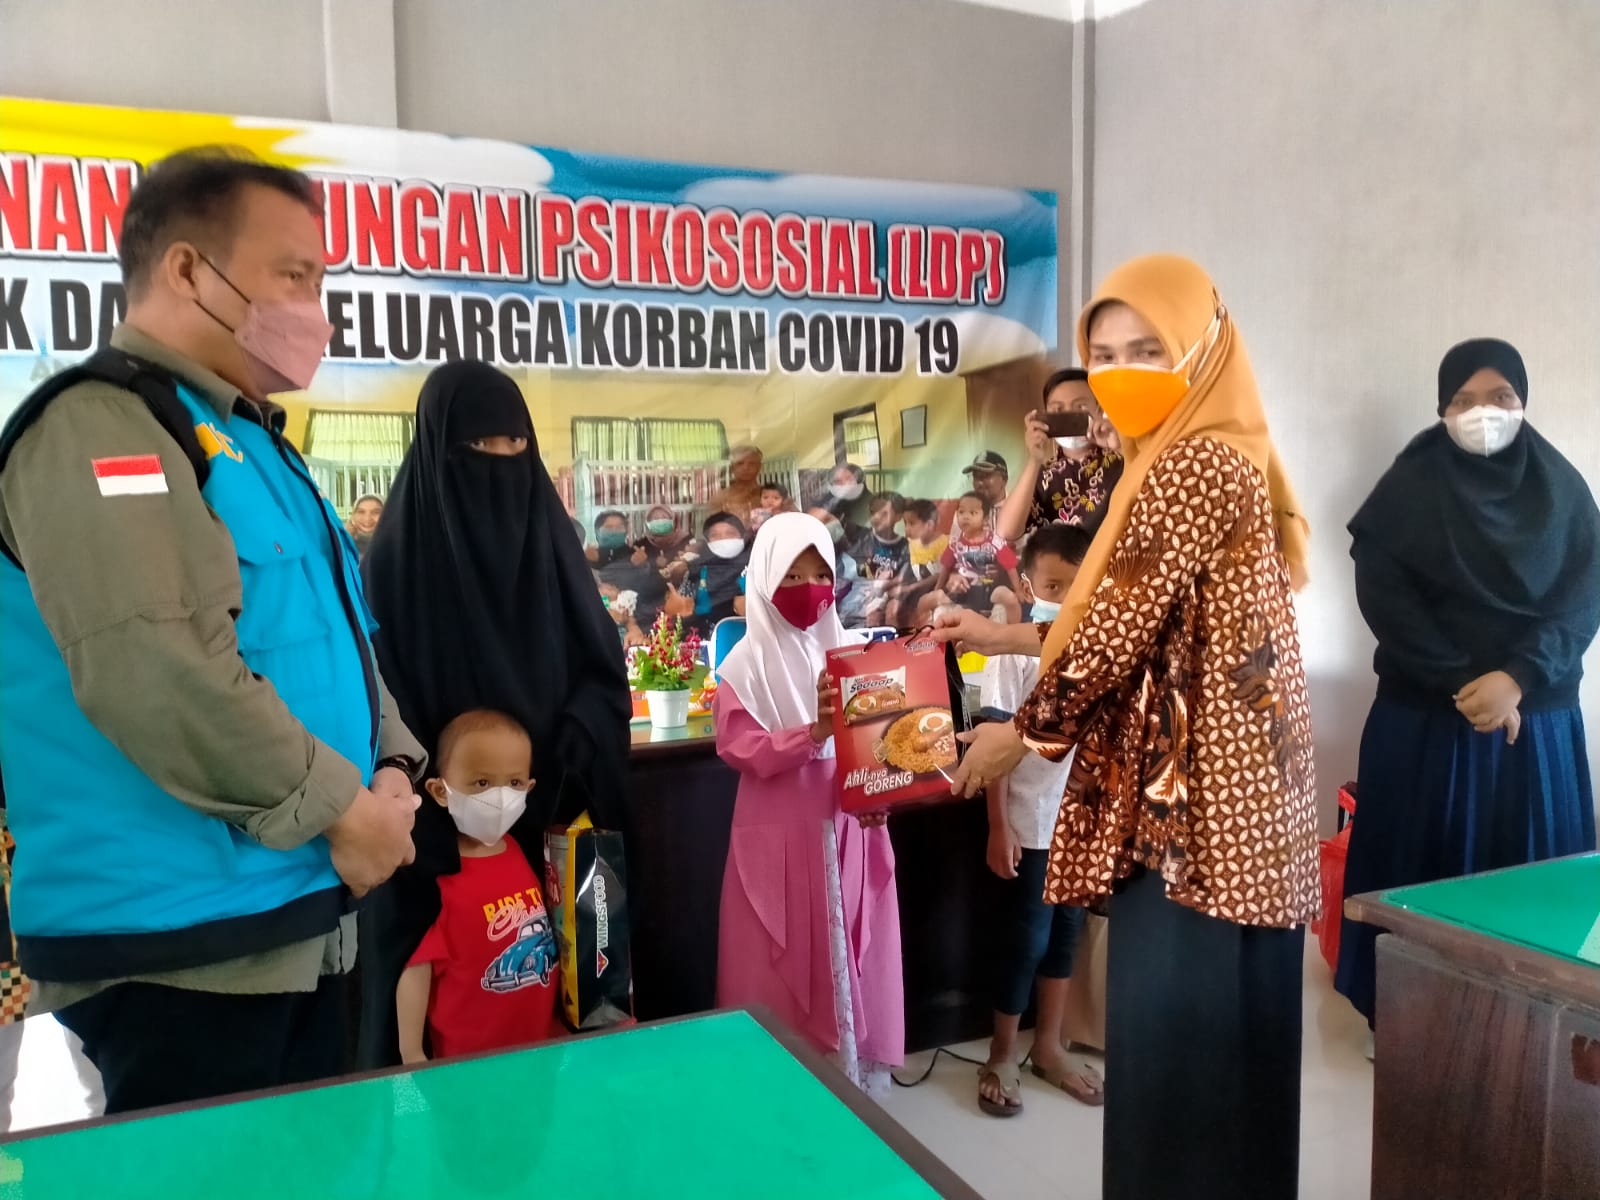 layanan dukungan psikososial (LDP) Dinas Sosial Provinsi Jawa Timur bagi anak dalam keluarga korban 